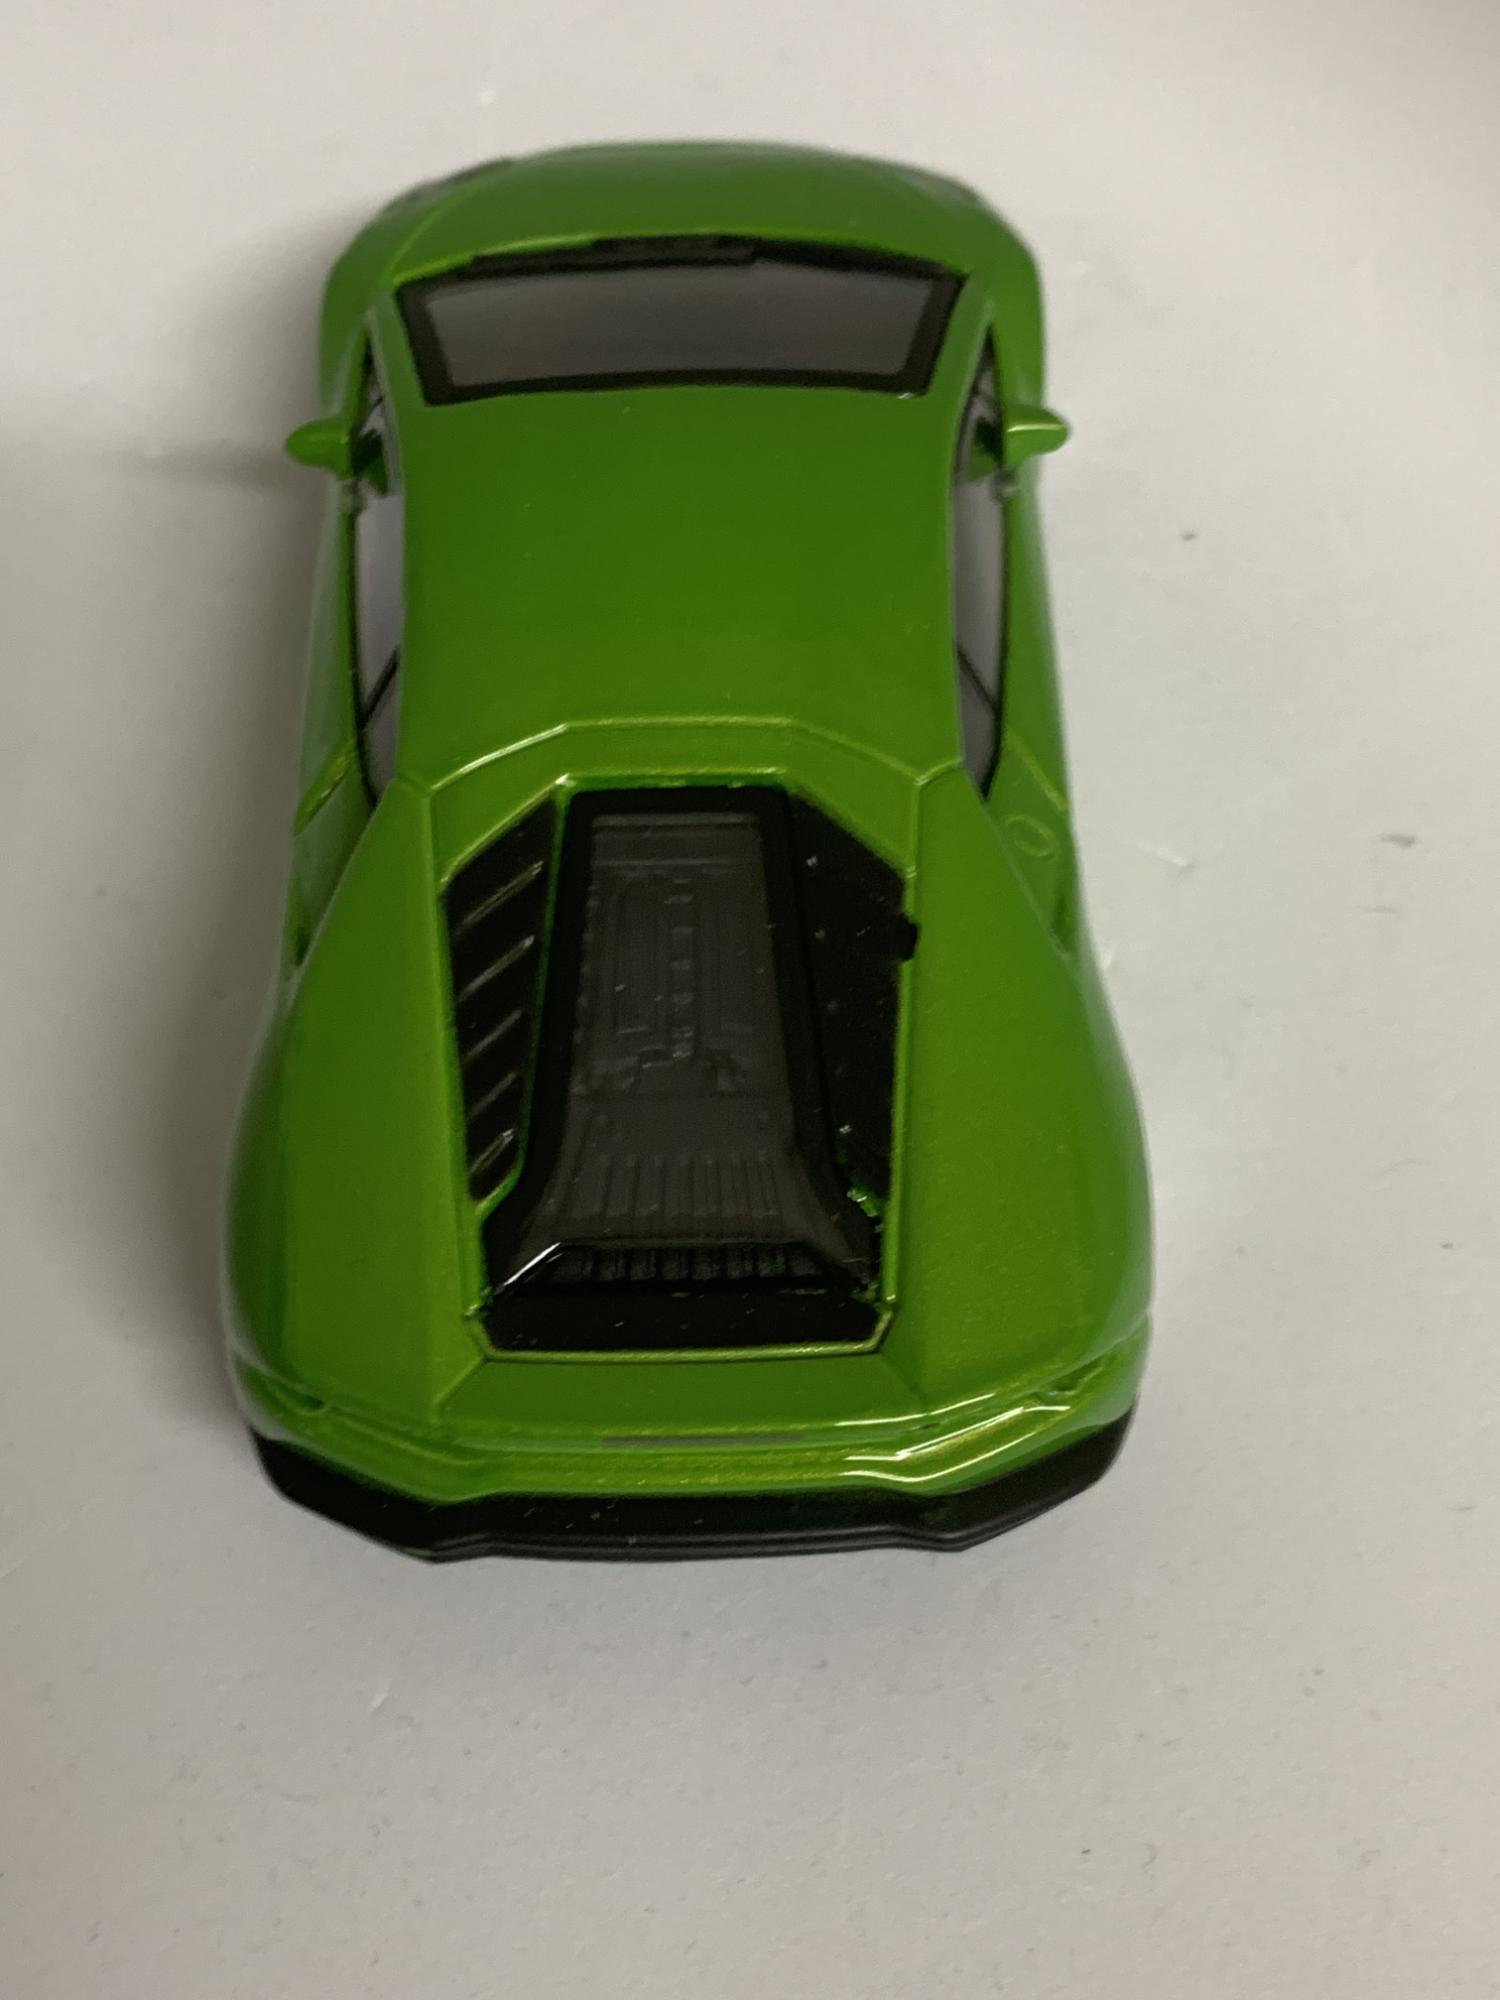 Lamborghini Huracan LP 610-4 2014 in green 1:43 scale model, Bburago, streetfire